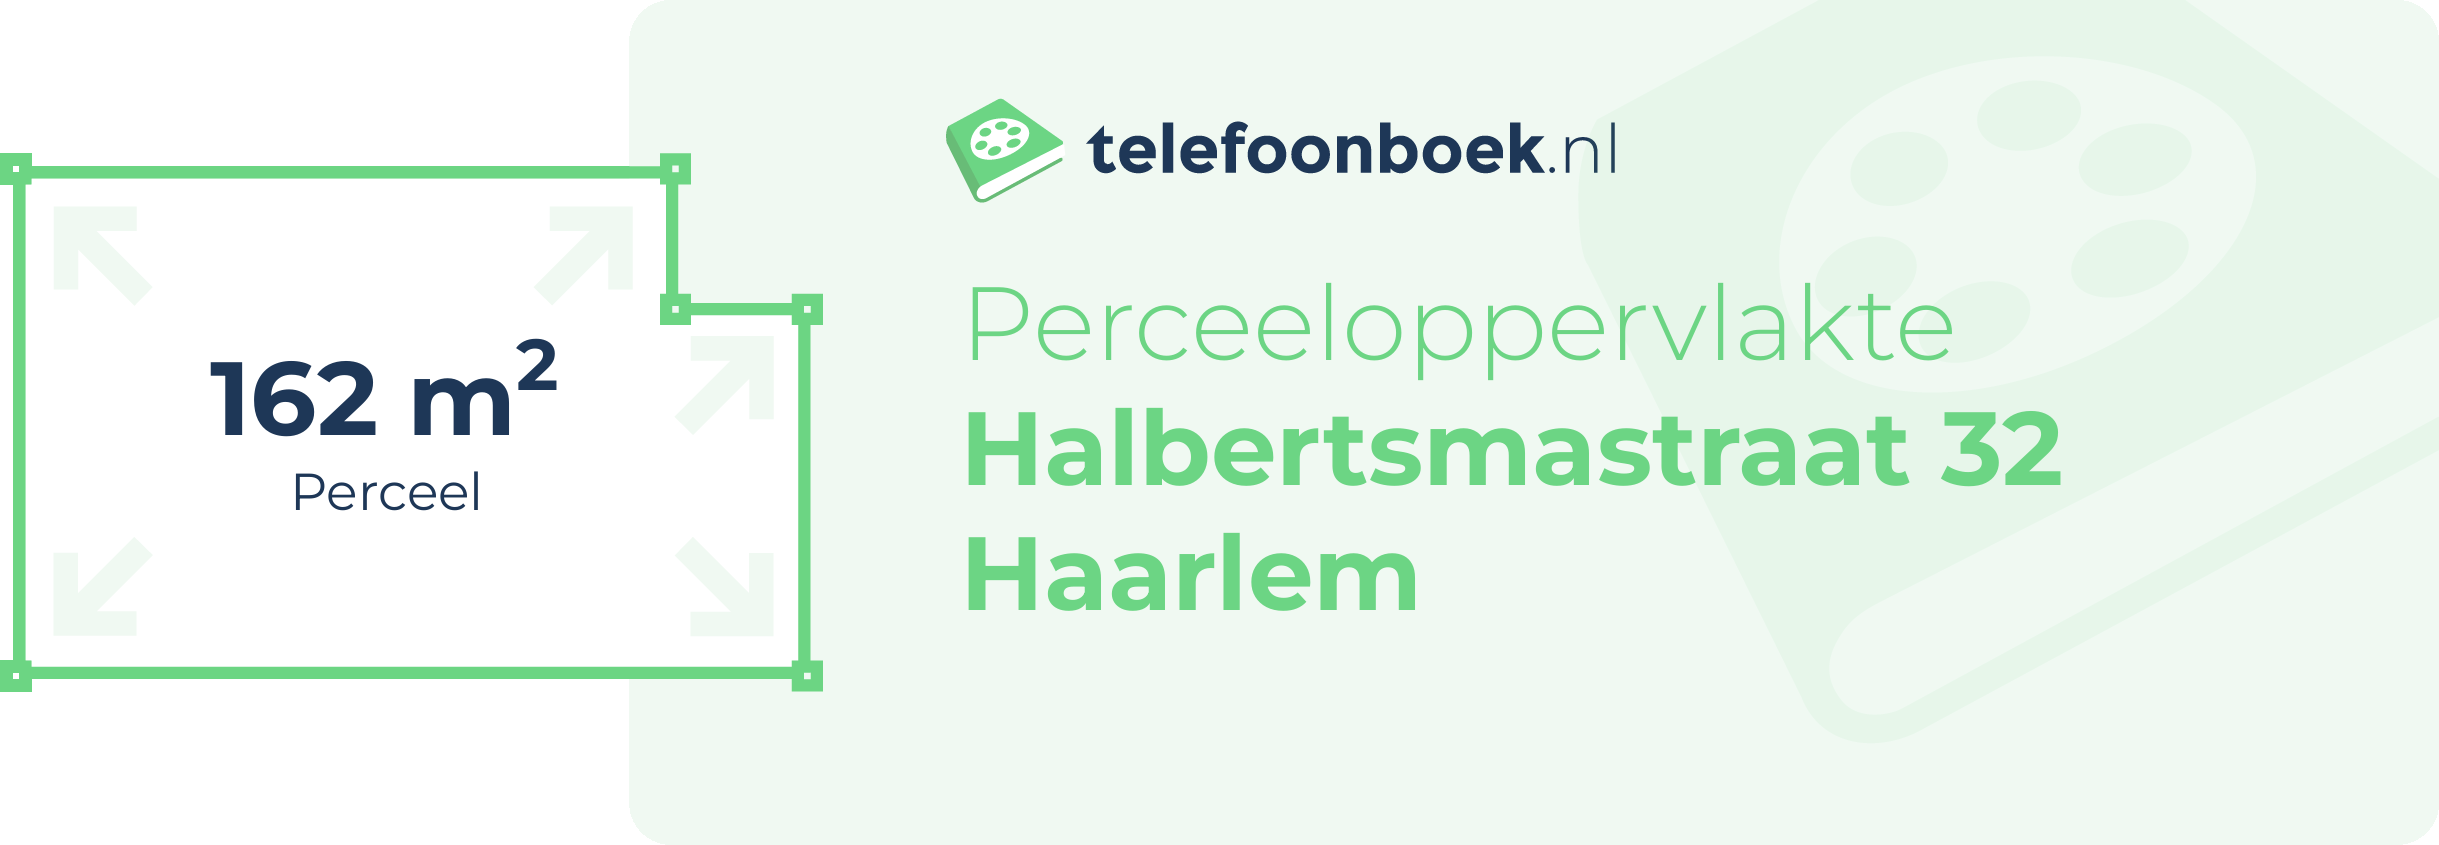 Perceeloppervlakte Halbertsmastraat 32 Haarlem